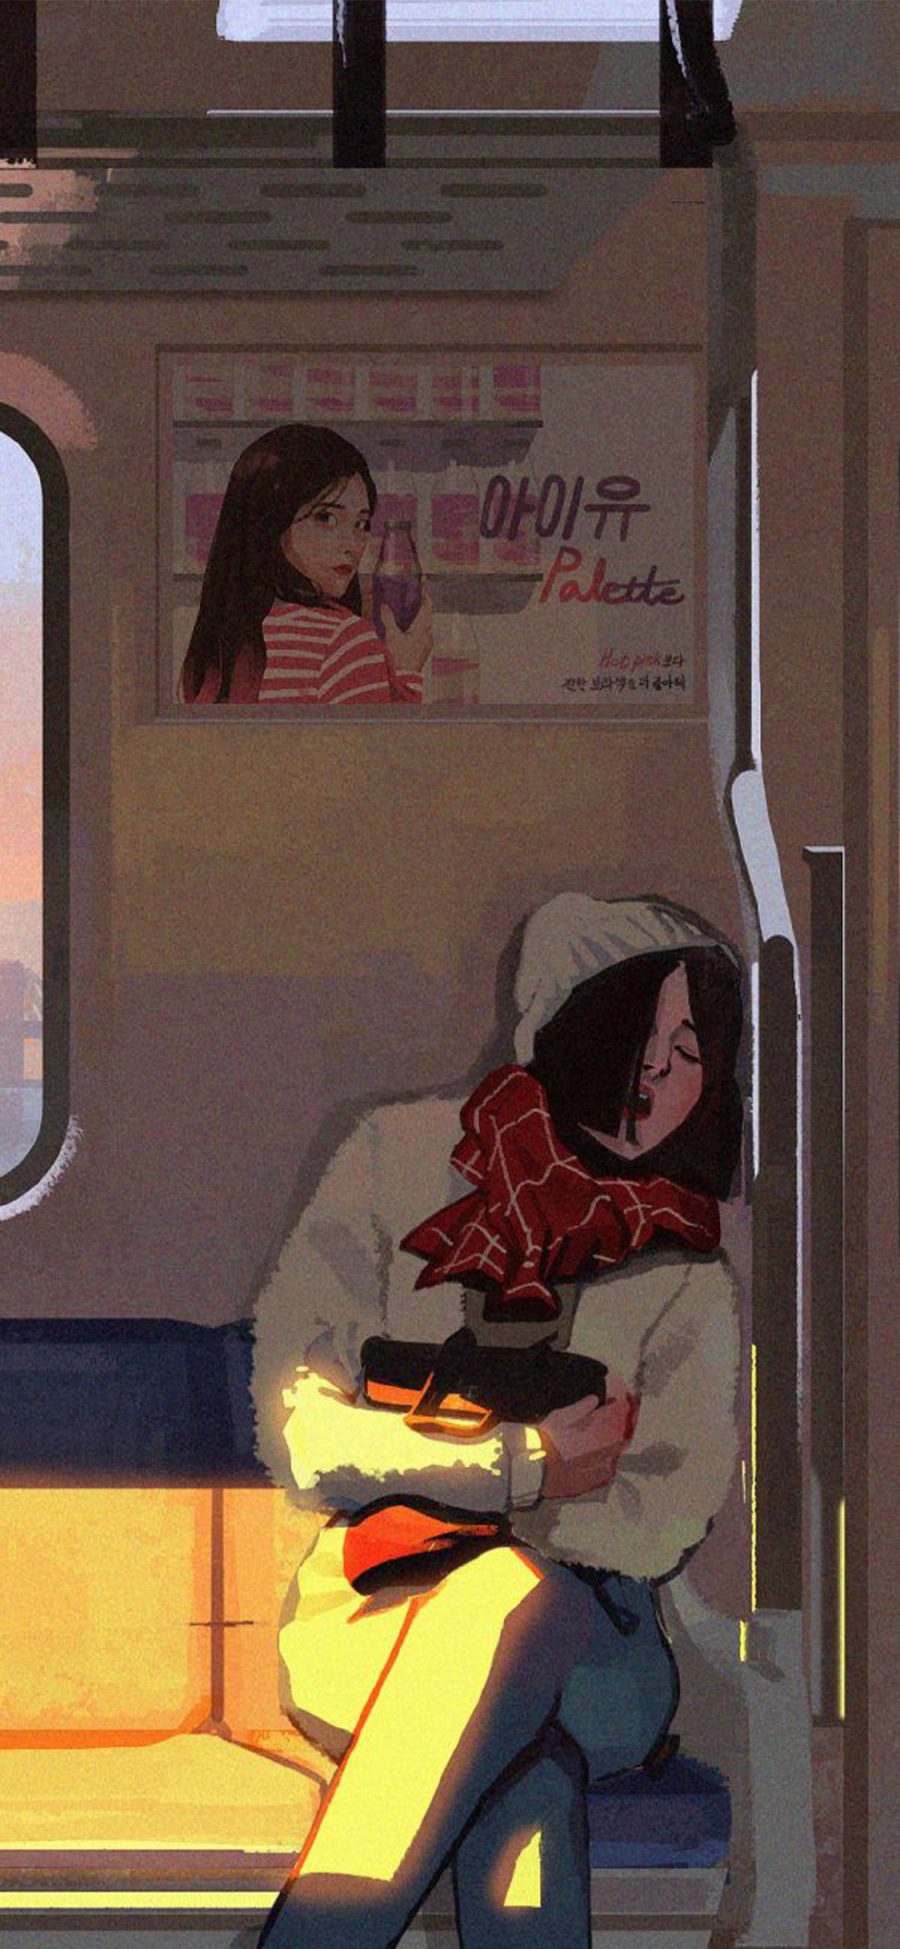 [2436×1125]插图 地铁 女孩 文艺 苹果手机动漫壁纸图片